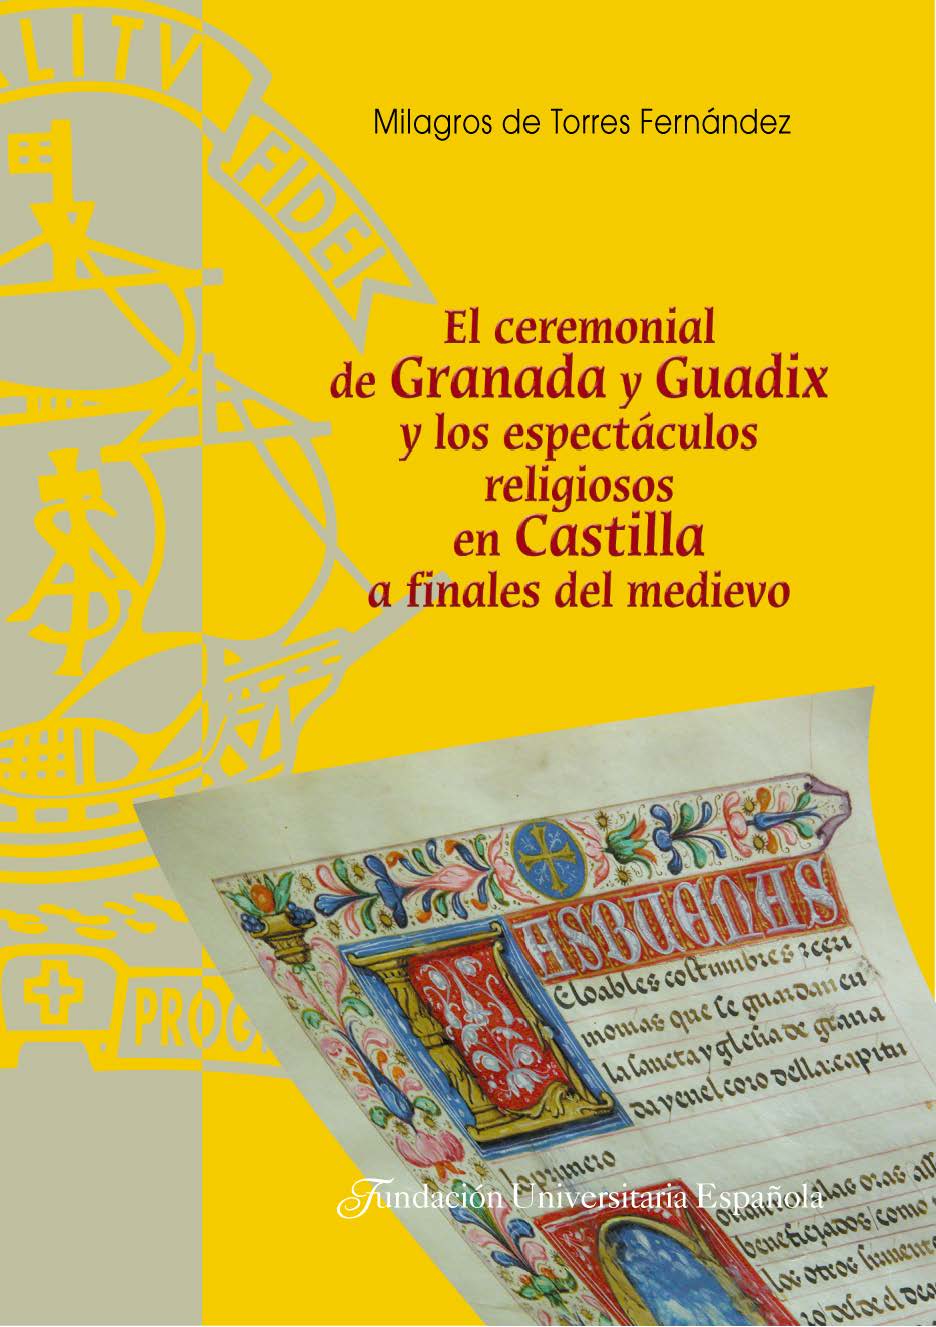 El ceremonial de Granada y Guadix y los espectculos religiosos en Castilla a finales del medievo